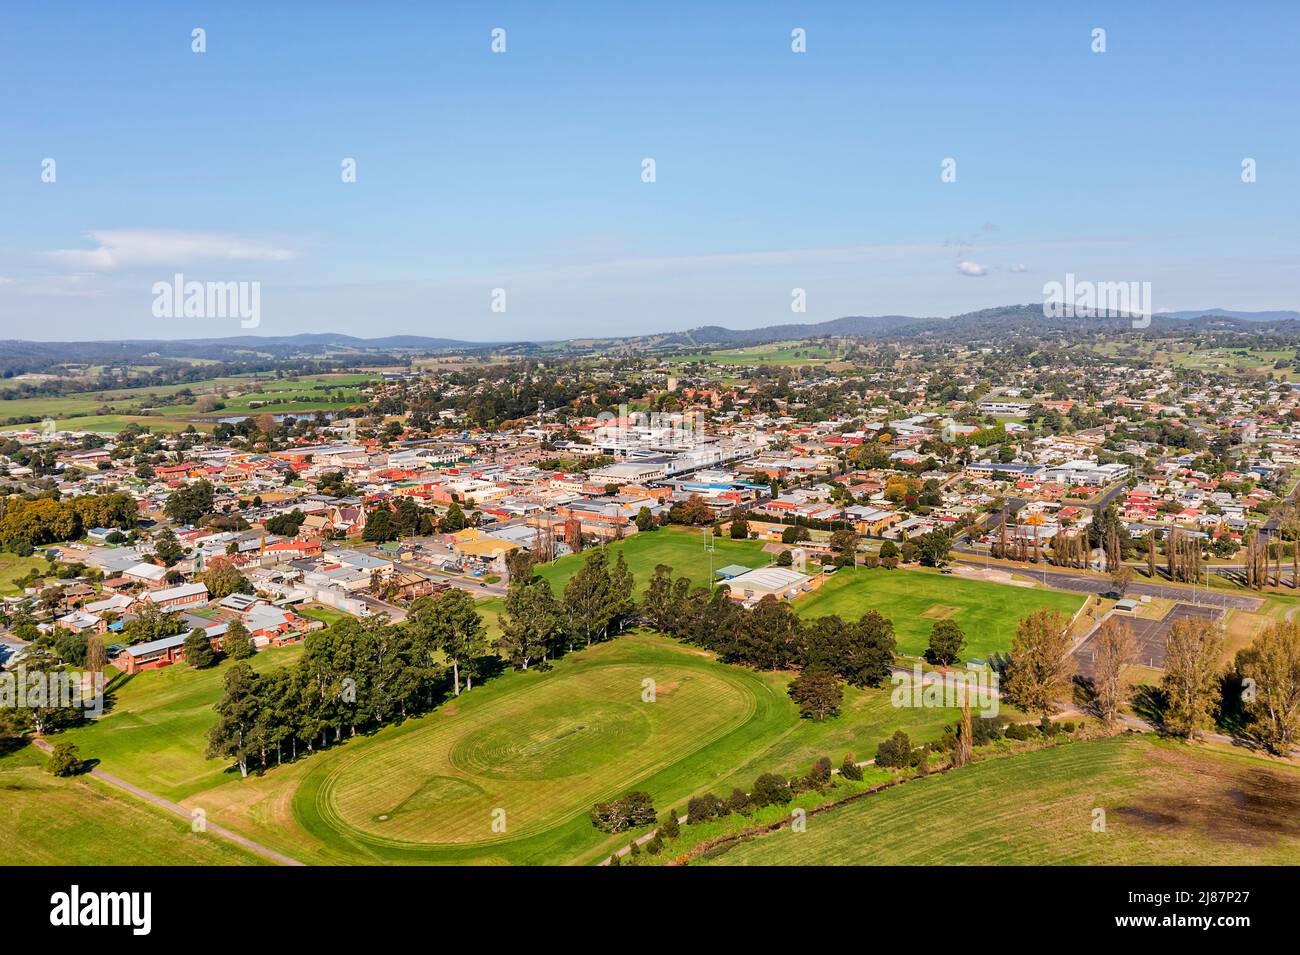 Ländliche Landwirtschaft Bega Stadt im Bega Tal an der australischen Südküste - landschaftlich schöne Luftaufnahme über die Innenstadt. Stockfoto